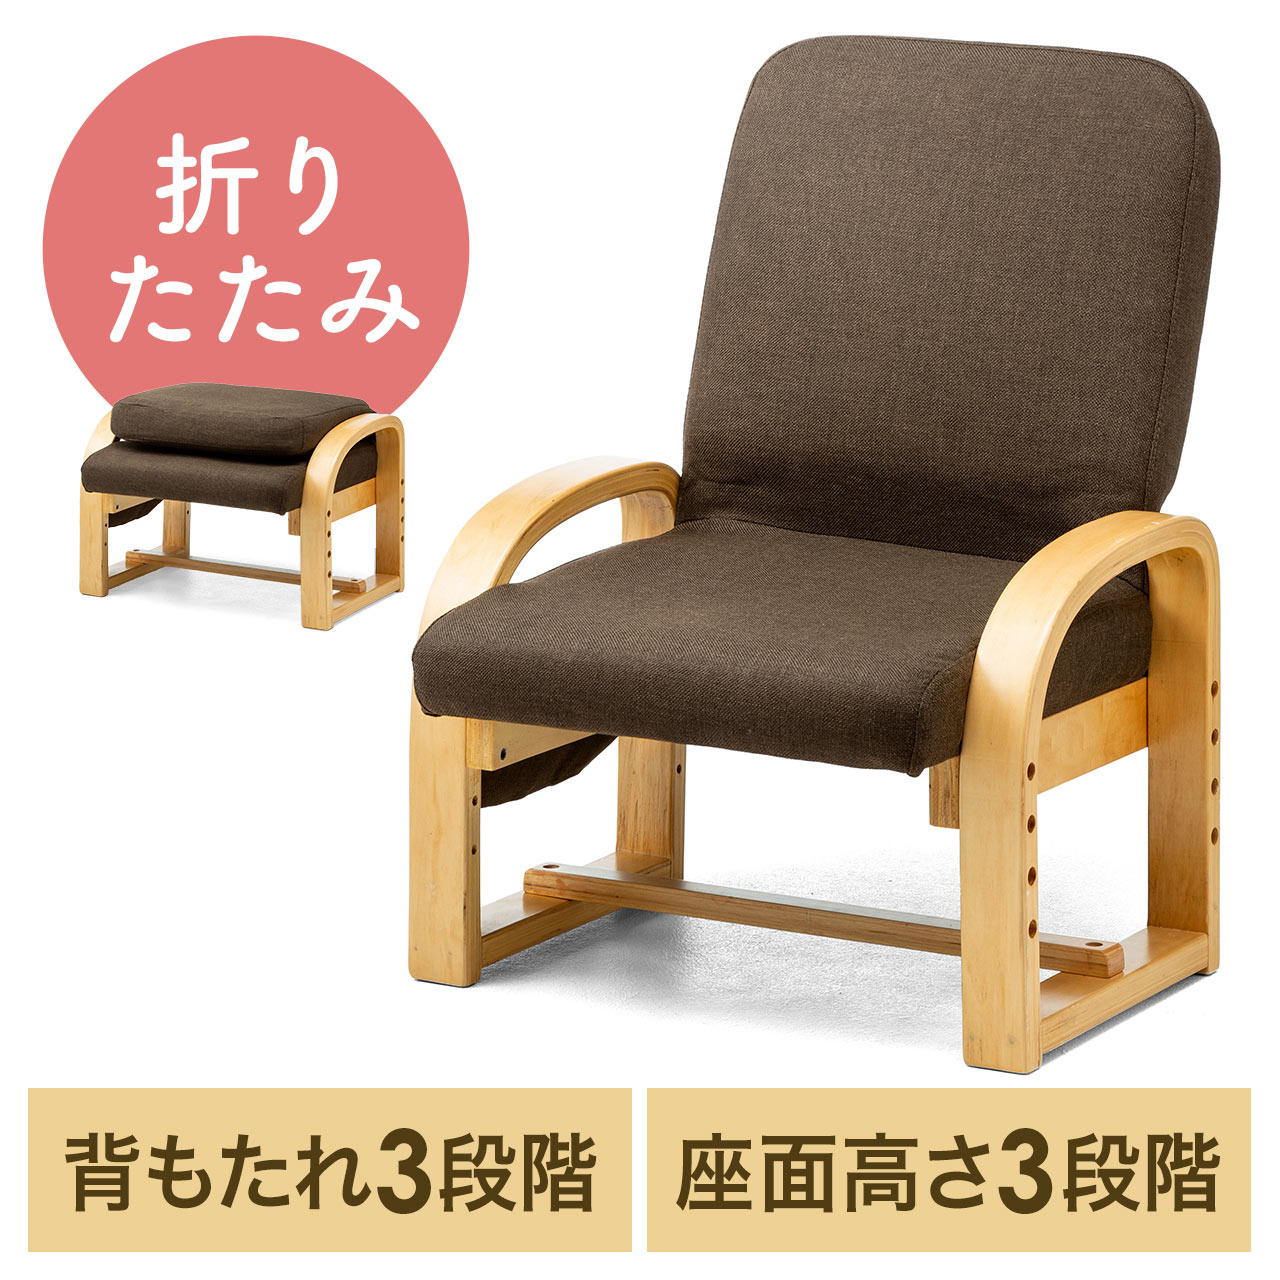 【期間限定特別価格】高座椅子 安楽椅子 コンパクト 背もたれ3段階角度調整 座面3段階高さ調整 背もたれ折りたたみ可能 150-SNCH021